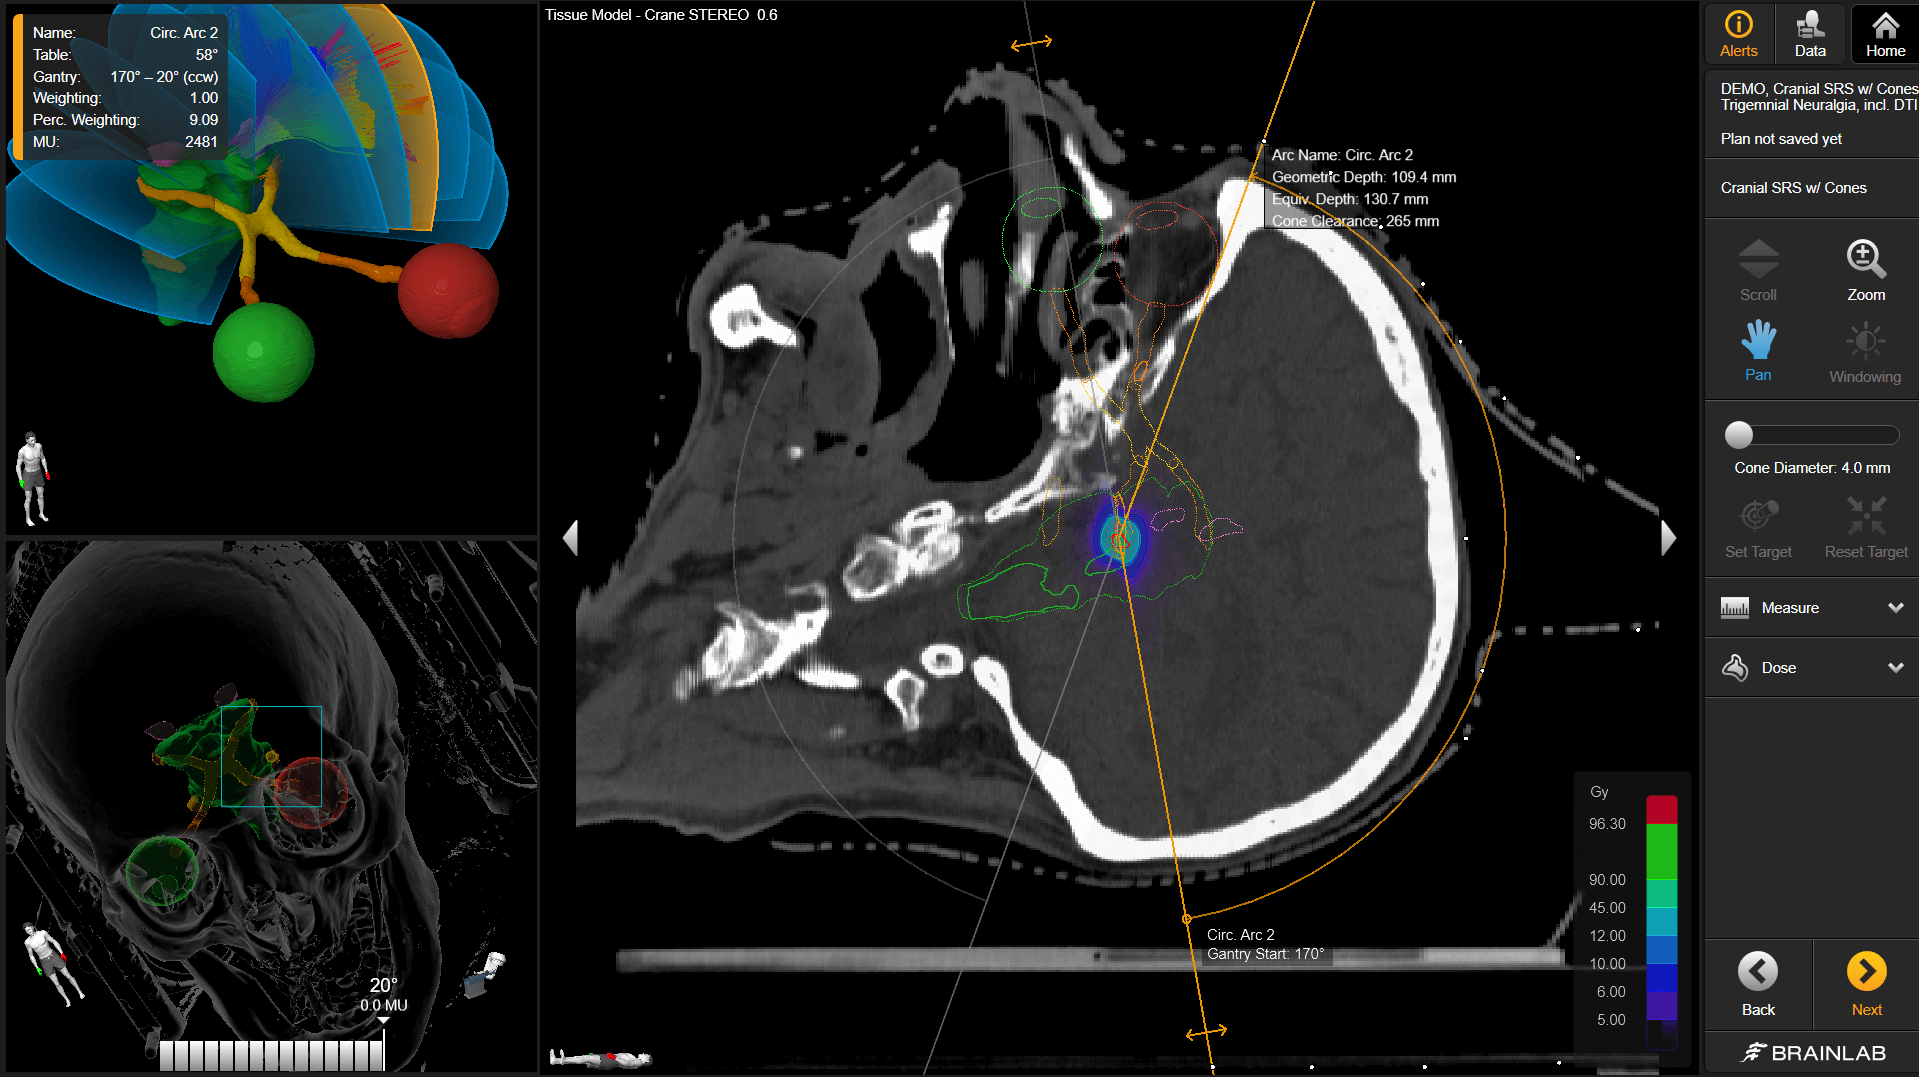 Visualización de distintos planes del cerebro con un plan de radioterapia craneal que muestra distintos ángulos y elementos del tratamiento.